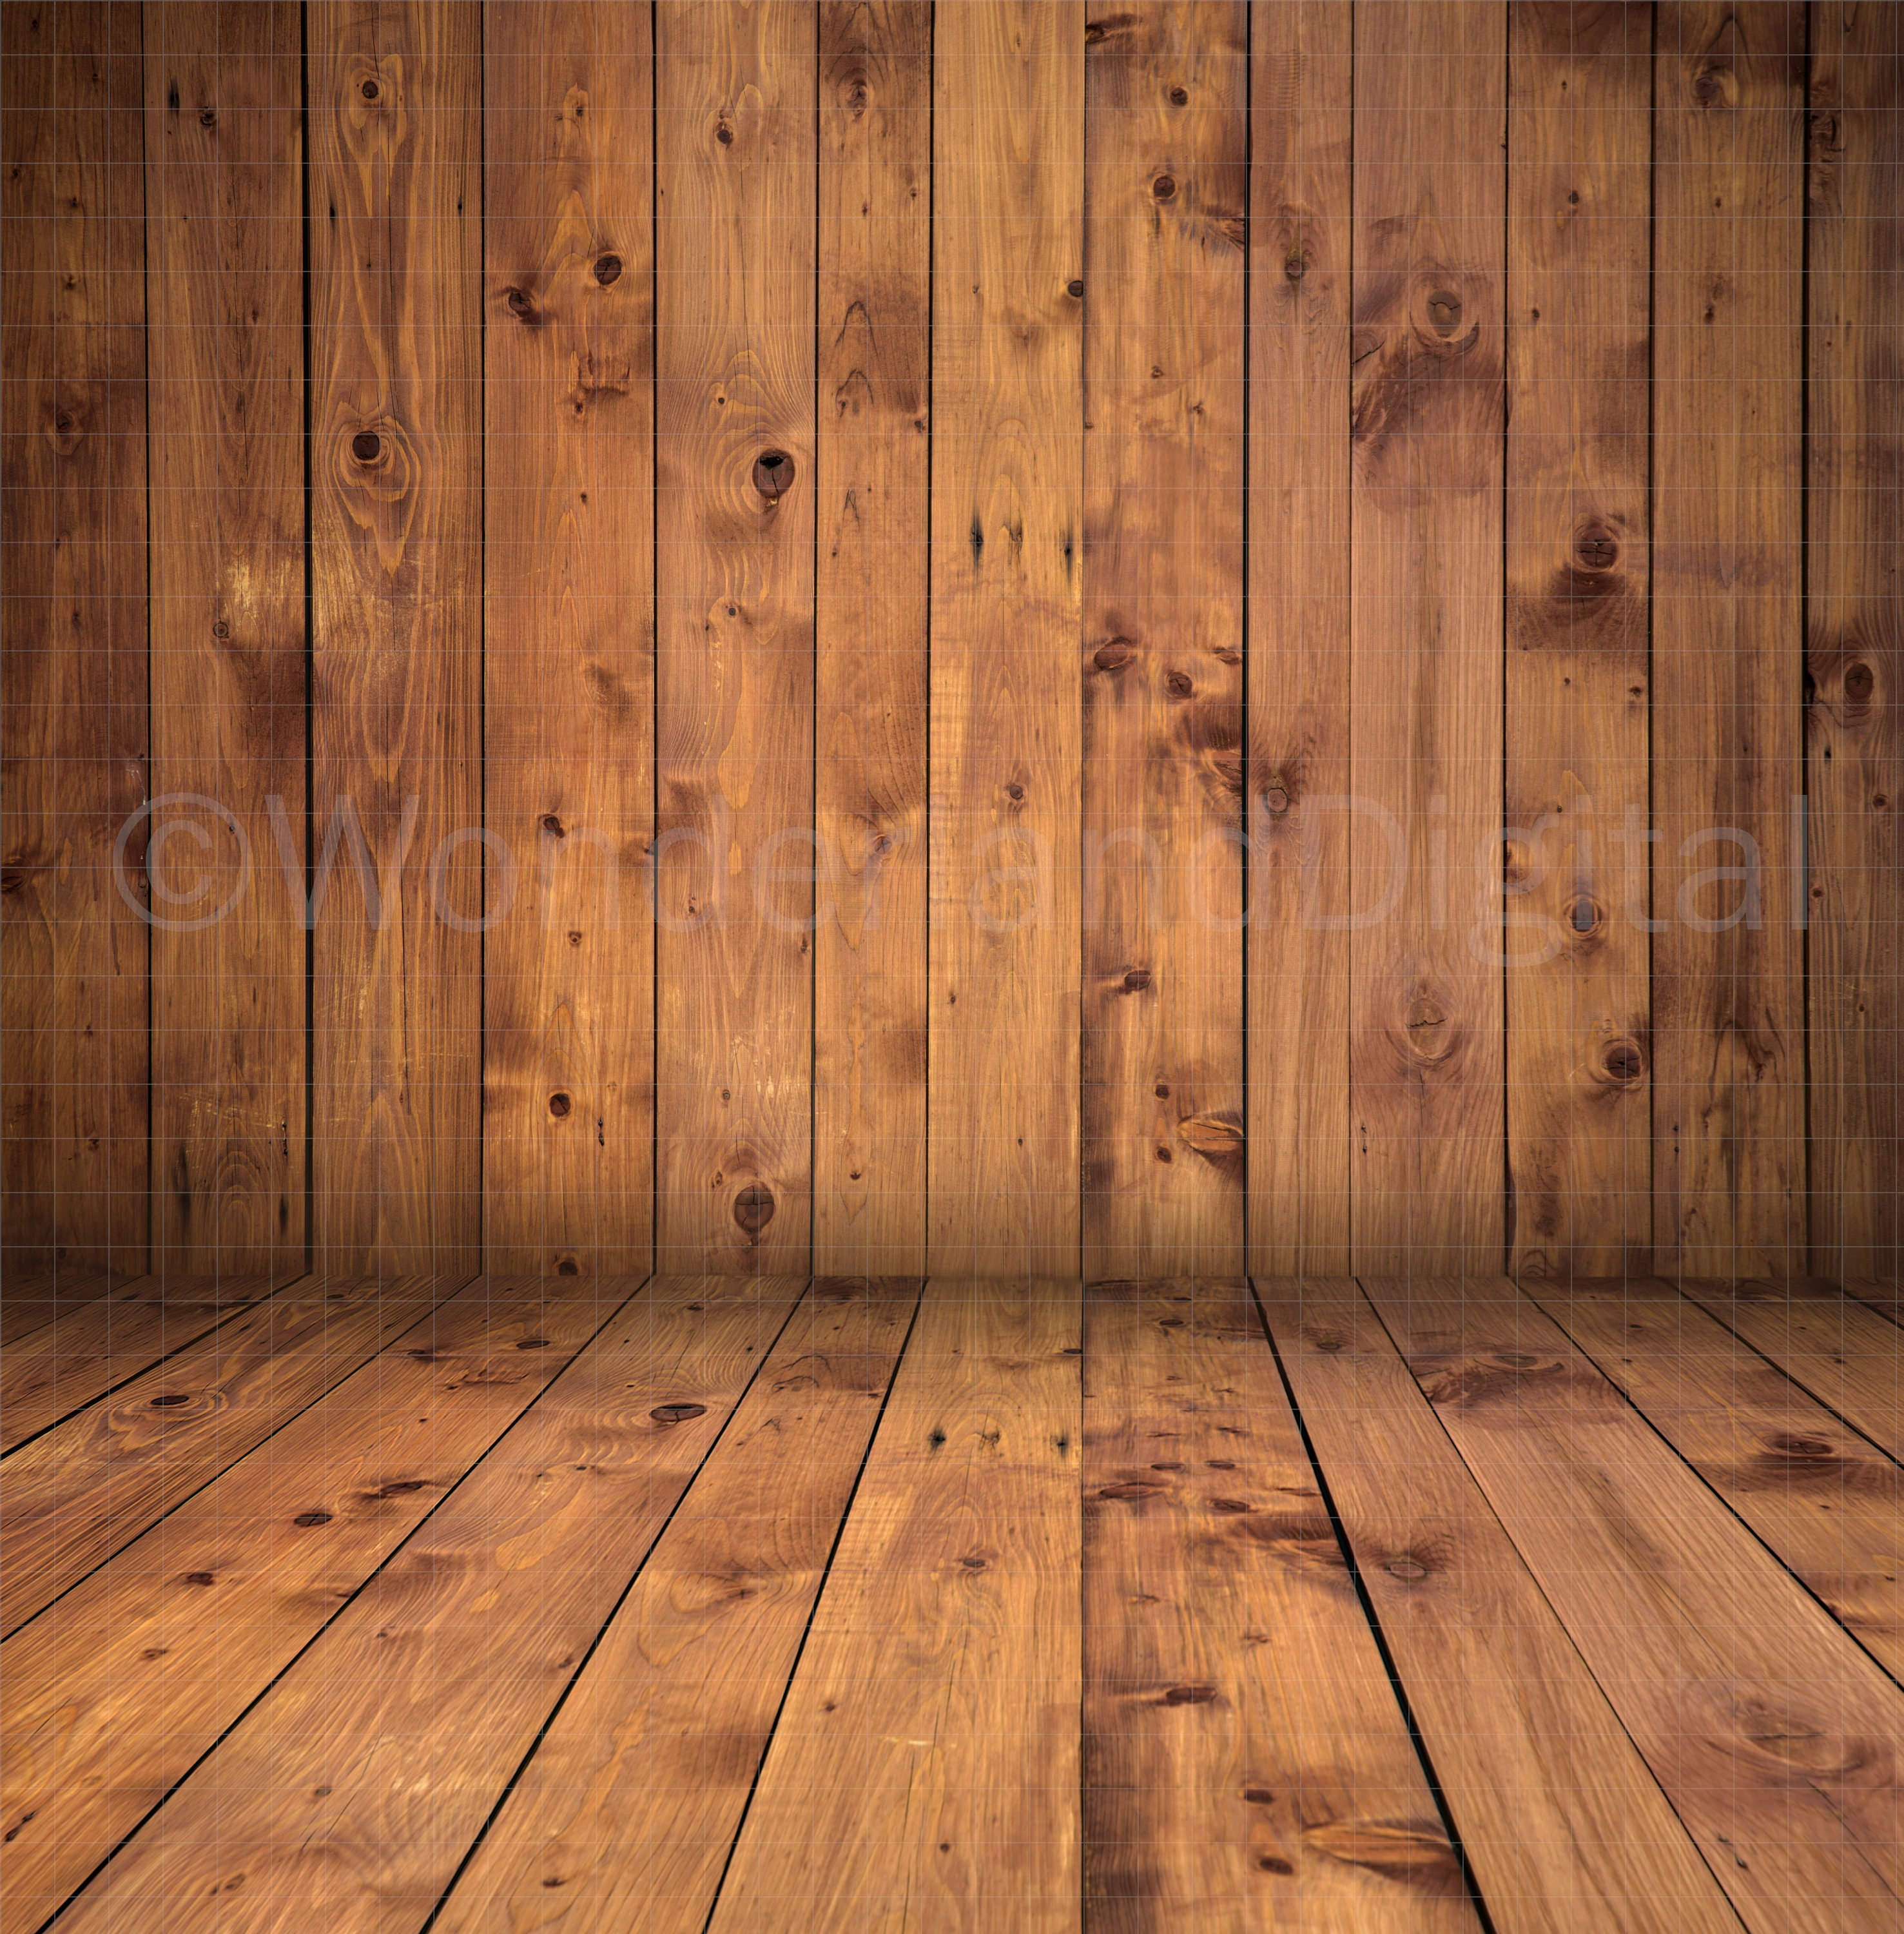 Nền gỗ (Wooden backdrop): Với nền gỗ trang trí, bạn hoàn toàn có thể thay đổi không gian sống một cách dễ dàng mà không tốn kém. Không chỉ mang đến vẻ ngoài ấn tượng, nền gỗ còn làm nổi bật các tác phẩm nghệ thuật, những chiếc đèn trang trí cũng như bộ sưu tập của bạn.